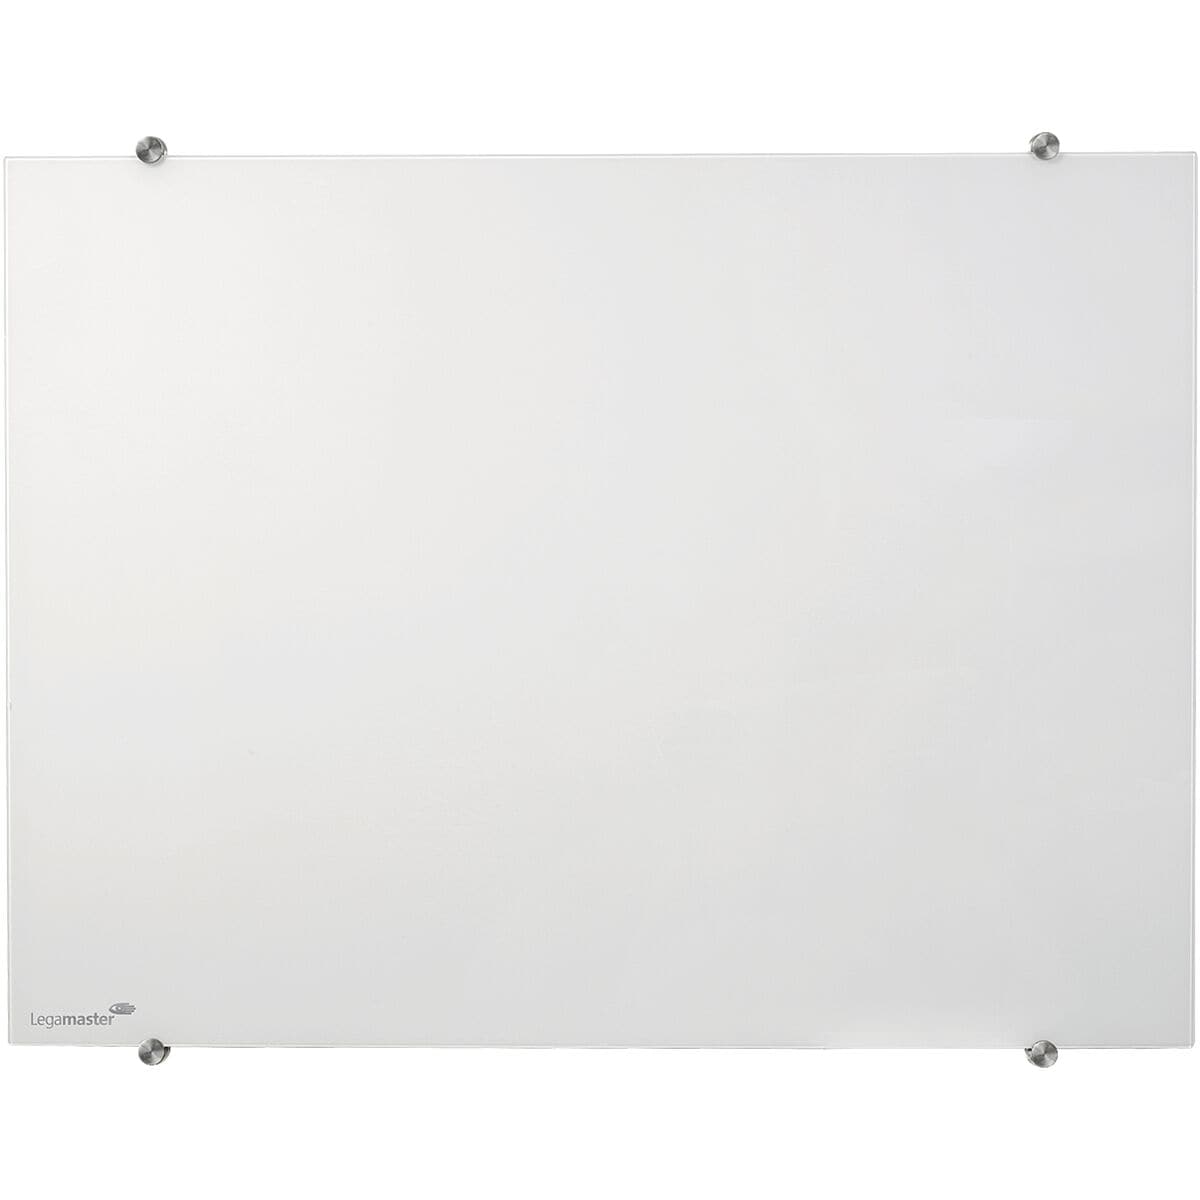 Legamaster Tableau magntique en verre COLOUR blanc, 90 x 120 cm